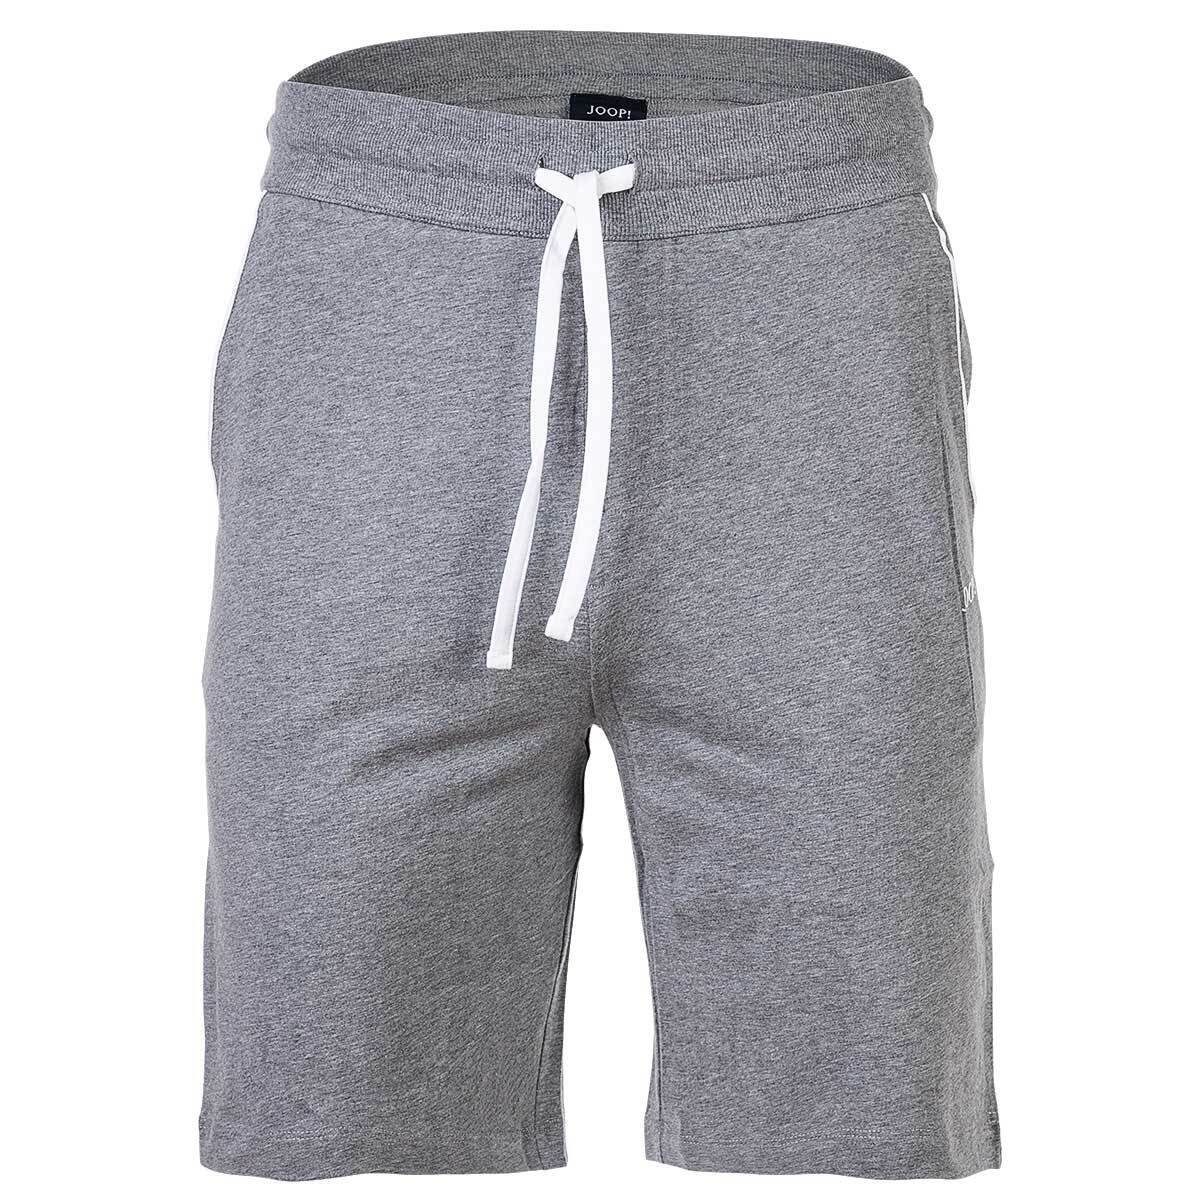 Joop! Sweatshorts Herren Jersey-Shorts - Loungewear, Jogginghose Grau